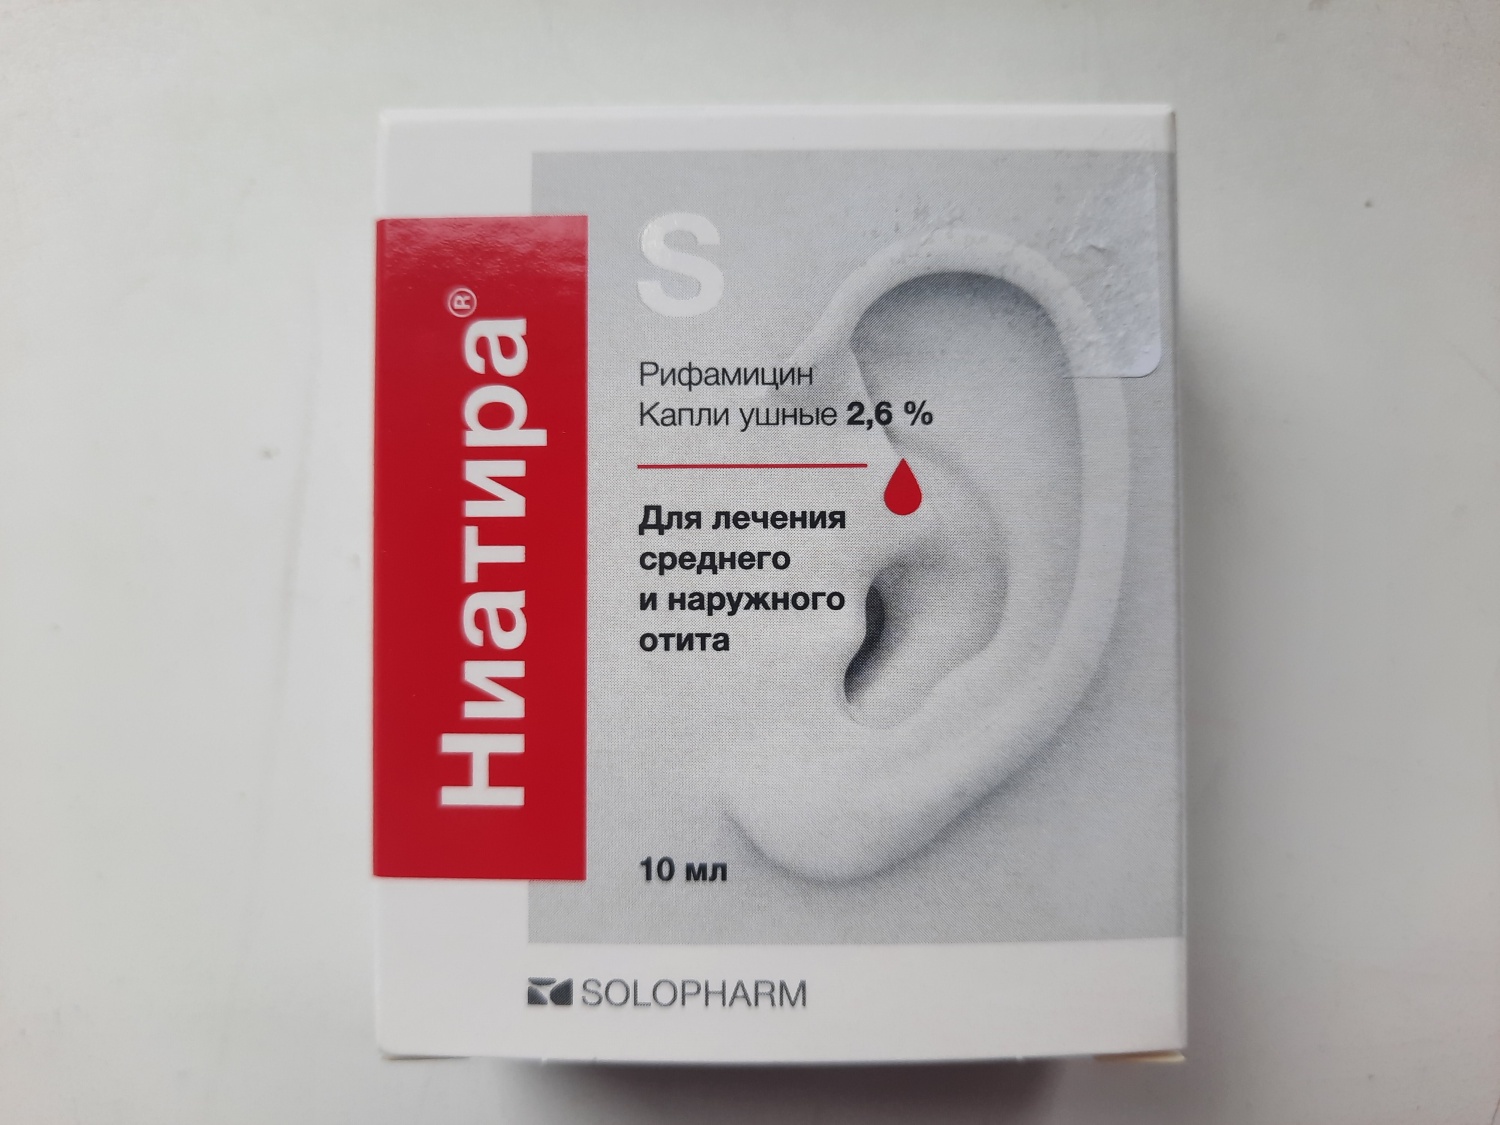 Капли ушные Solopharm Ниатира 2,6% | отзывы